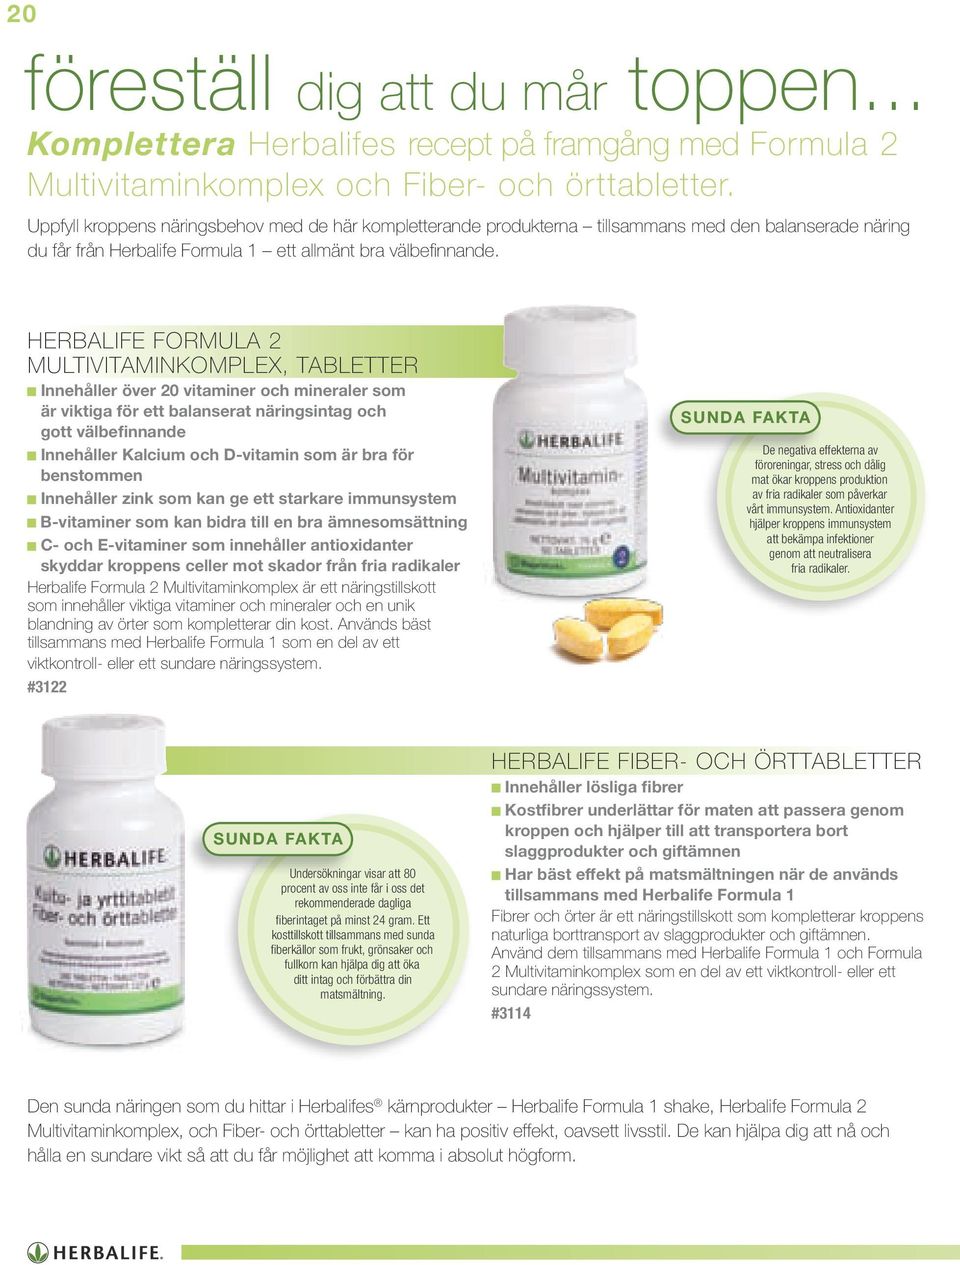 HERBALIFE FORMULA 2 MULTIVITAMINKOMPLEX, TABLETTER Innehåller över 20 vitaminer och mineraler som är viktiga för ett balanserat näringsintag och gott välbefinnande Innehåller Kalcium och D-vitamin